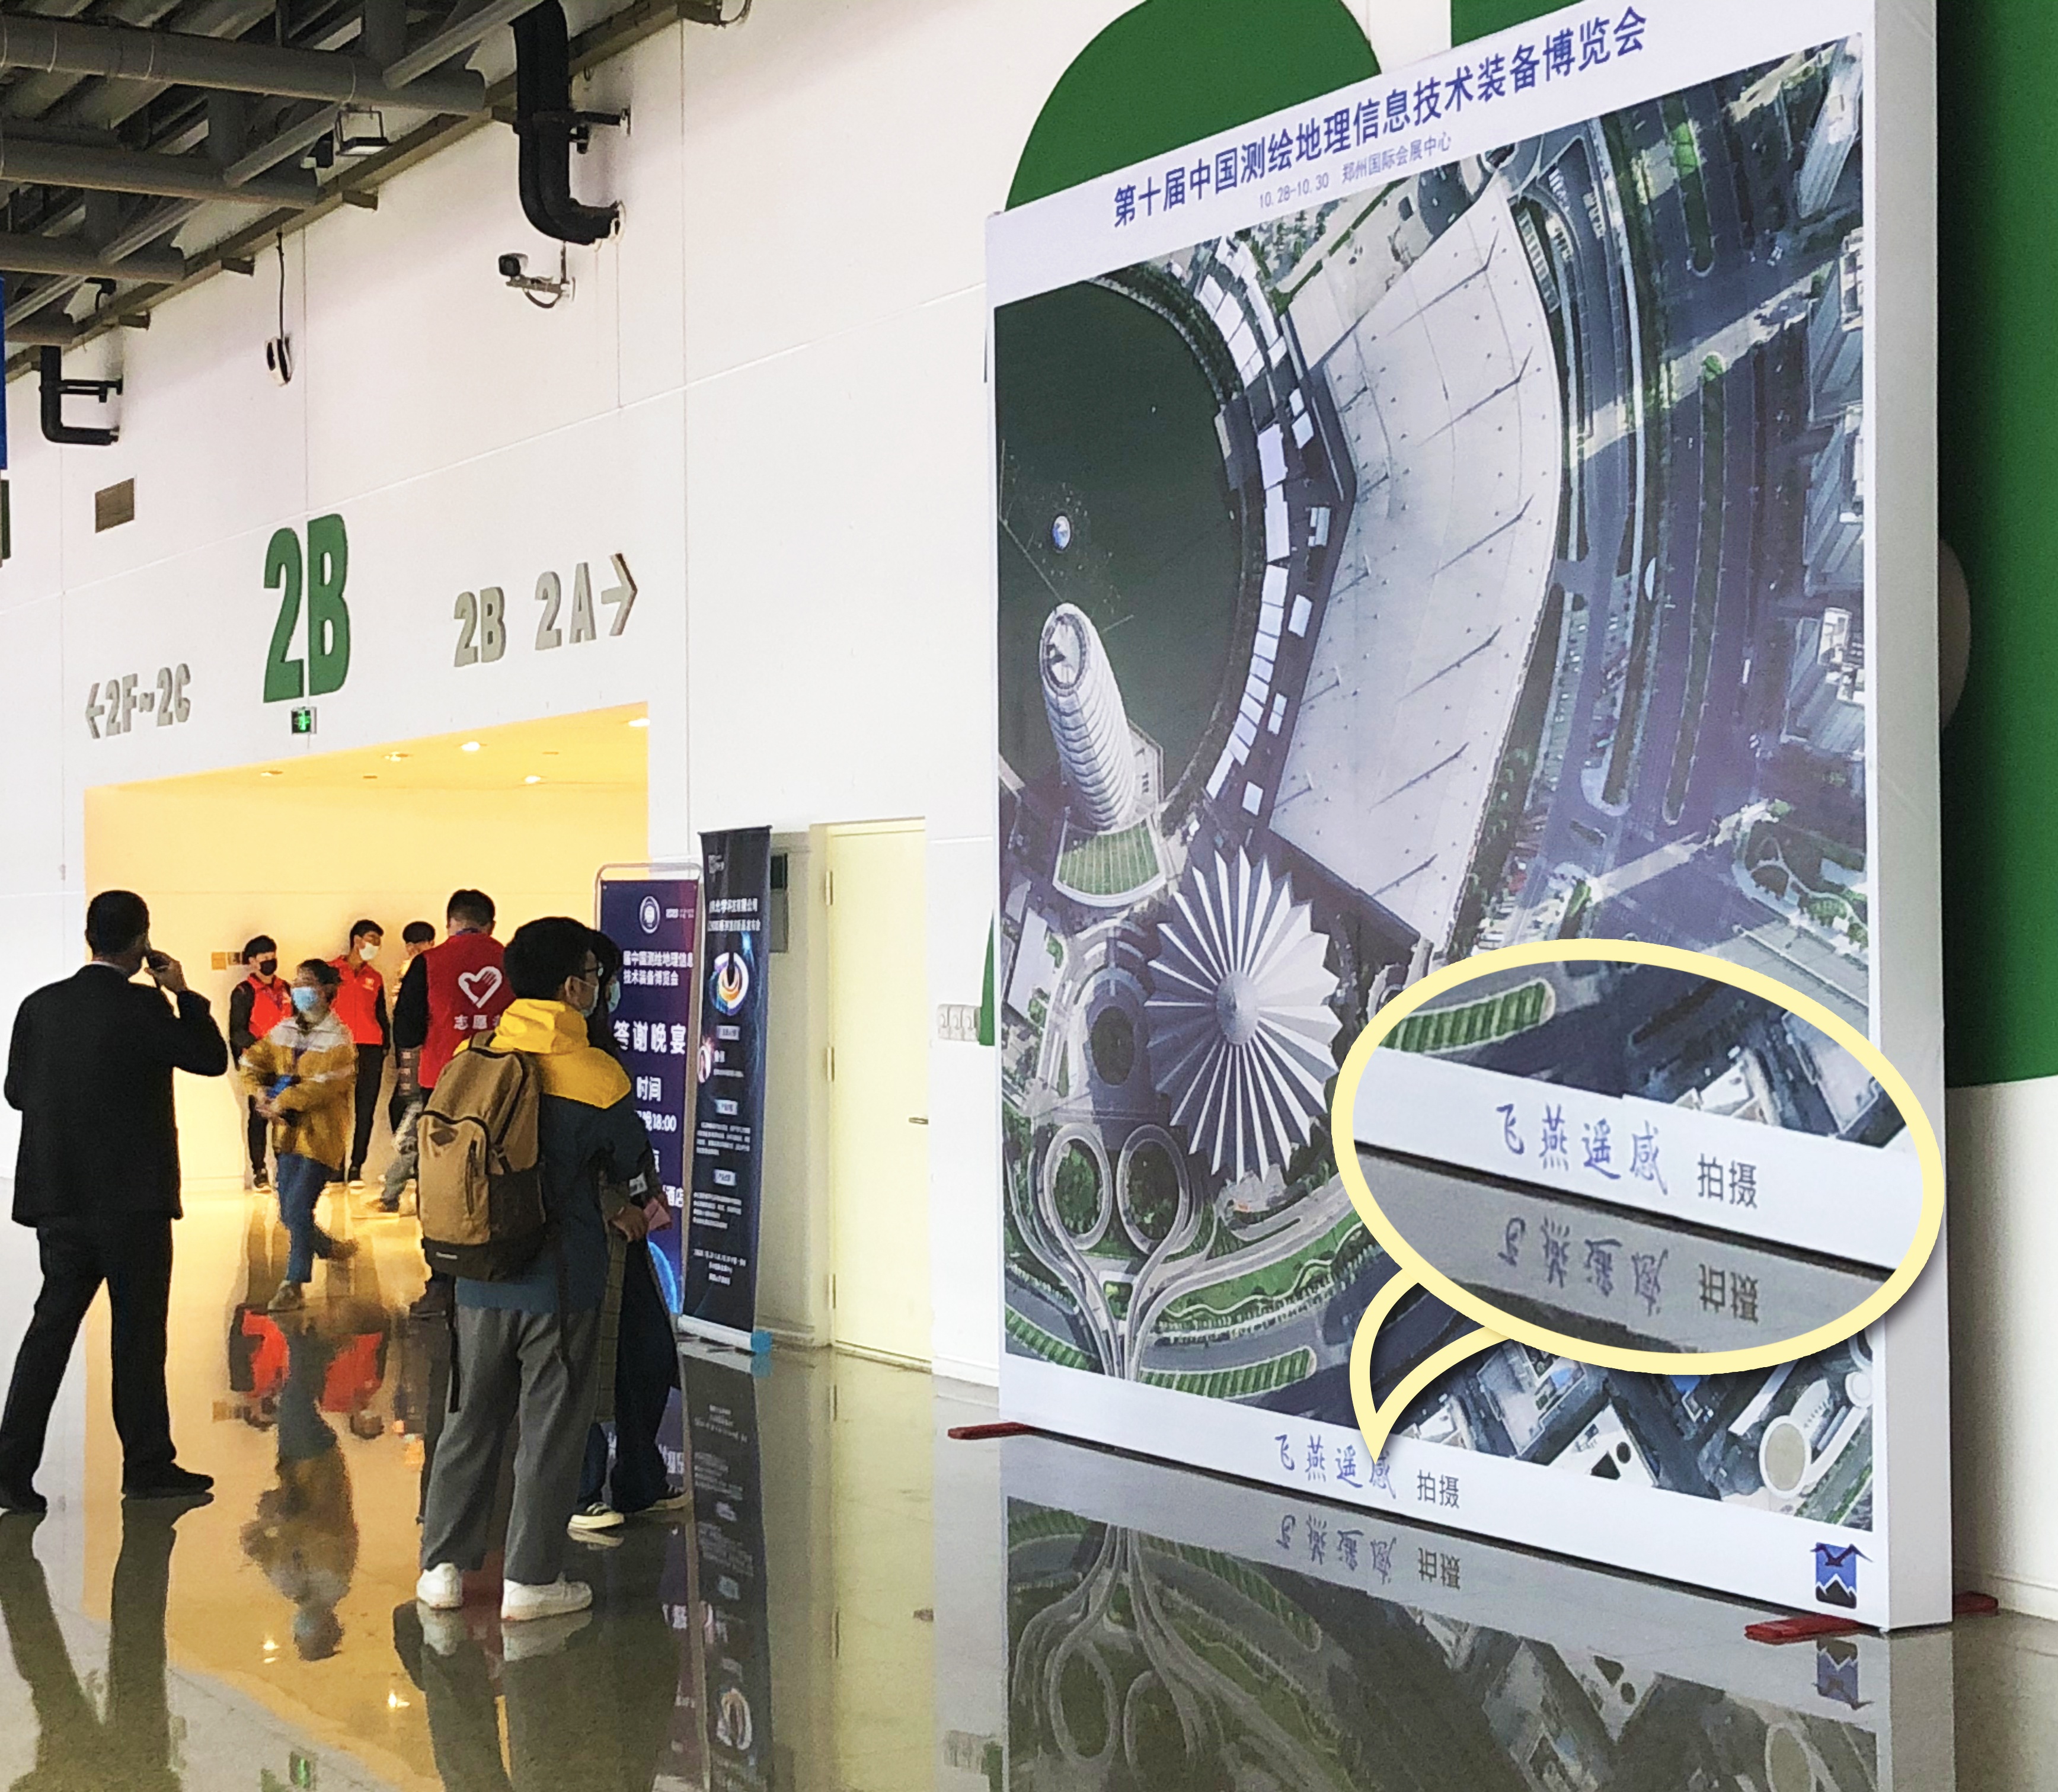 门面担当 智慧领航丨飞燕遥感特别亮相第十届中国测绘地理信息技术装备博览会